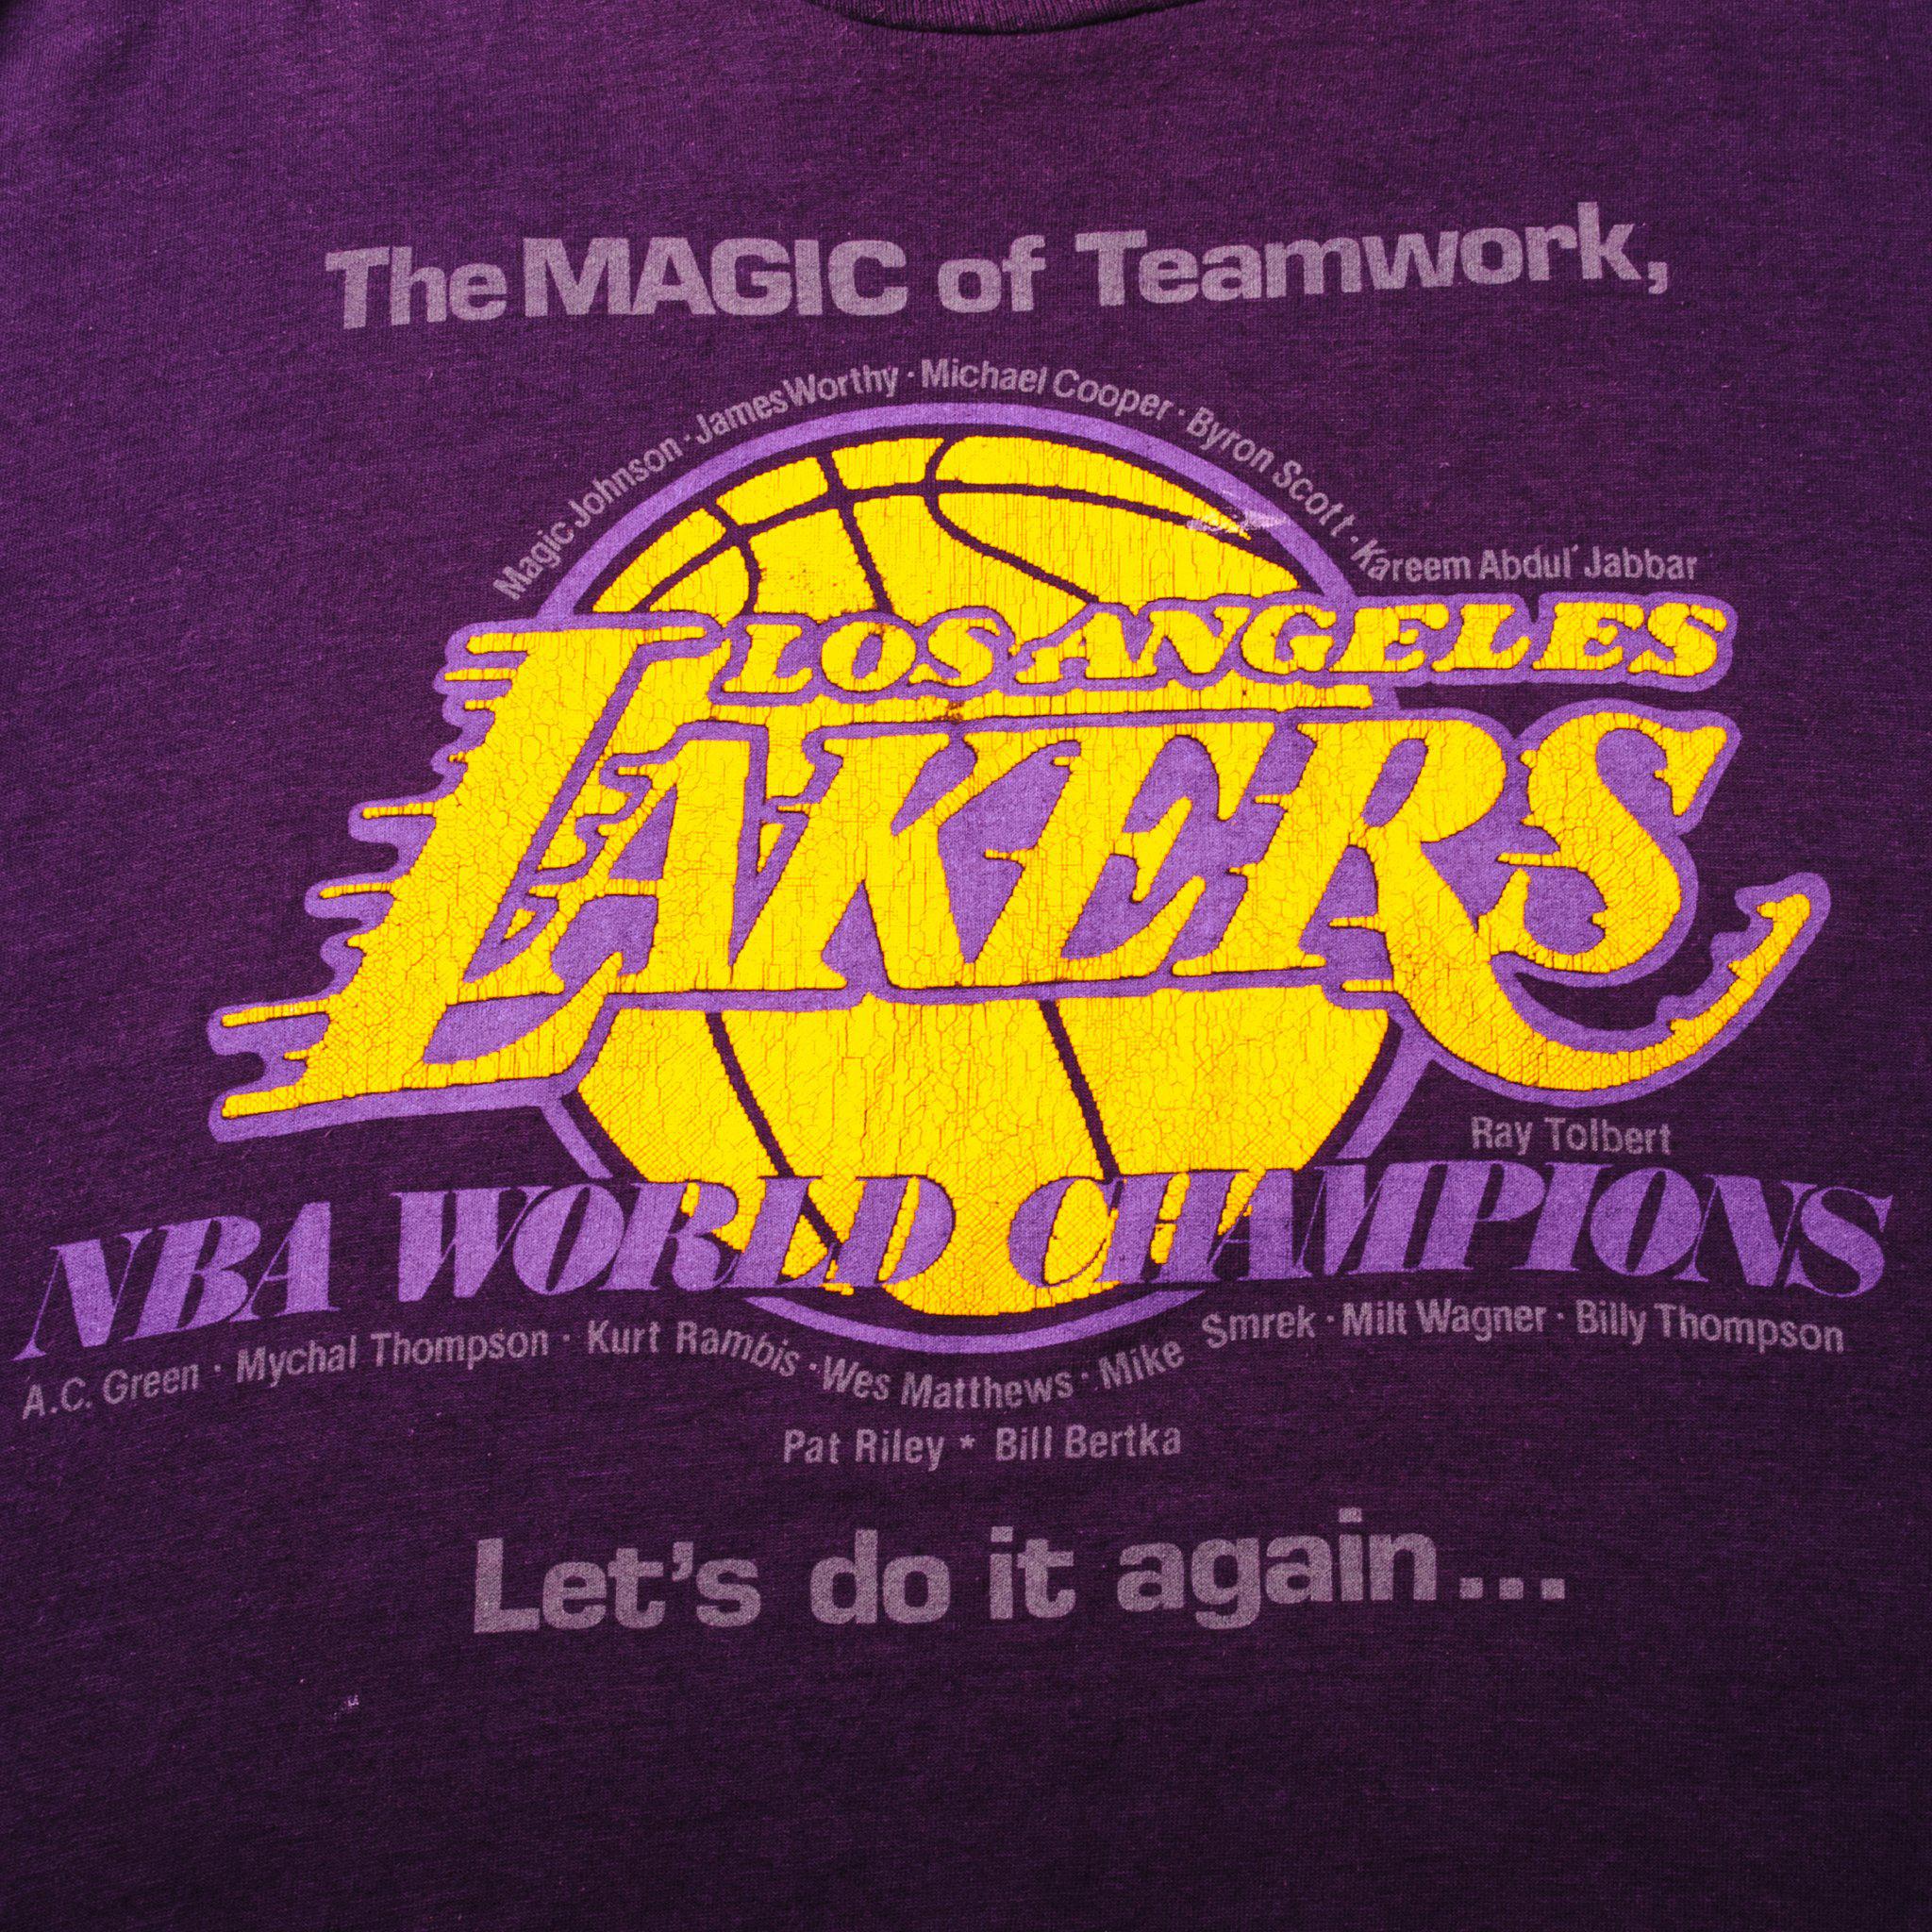 LA Lakers 1988 Vintage T-Shirt 